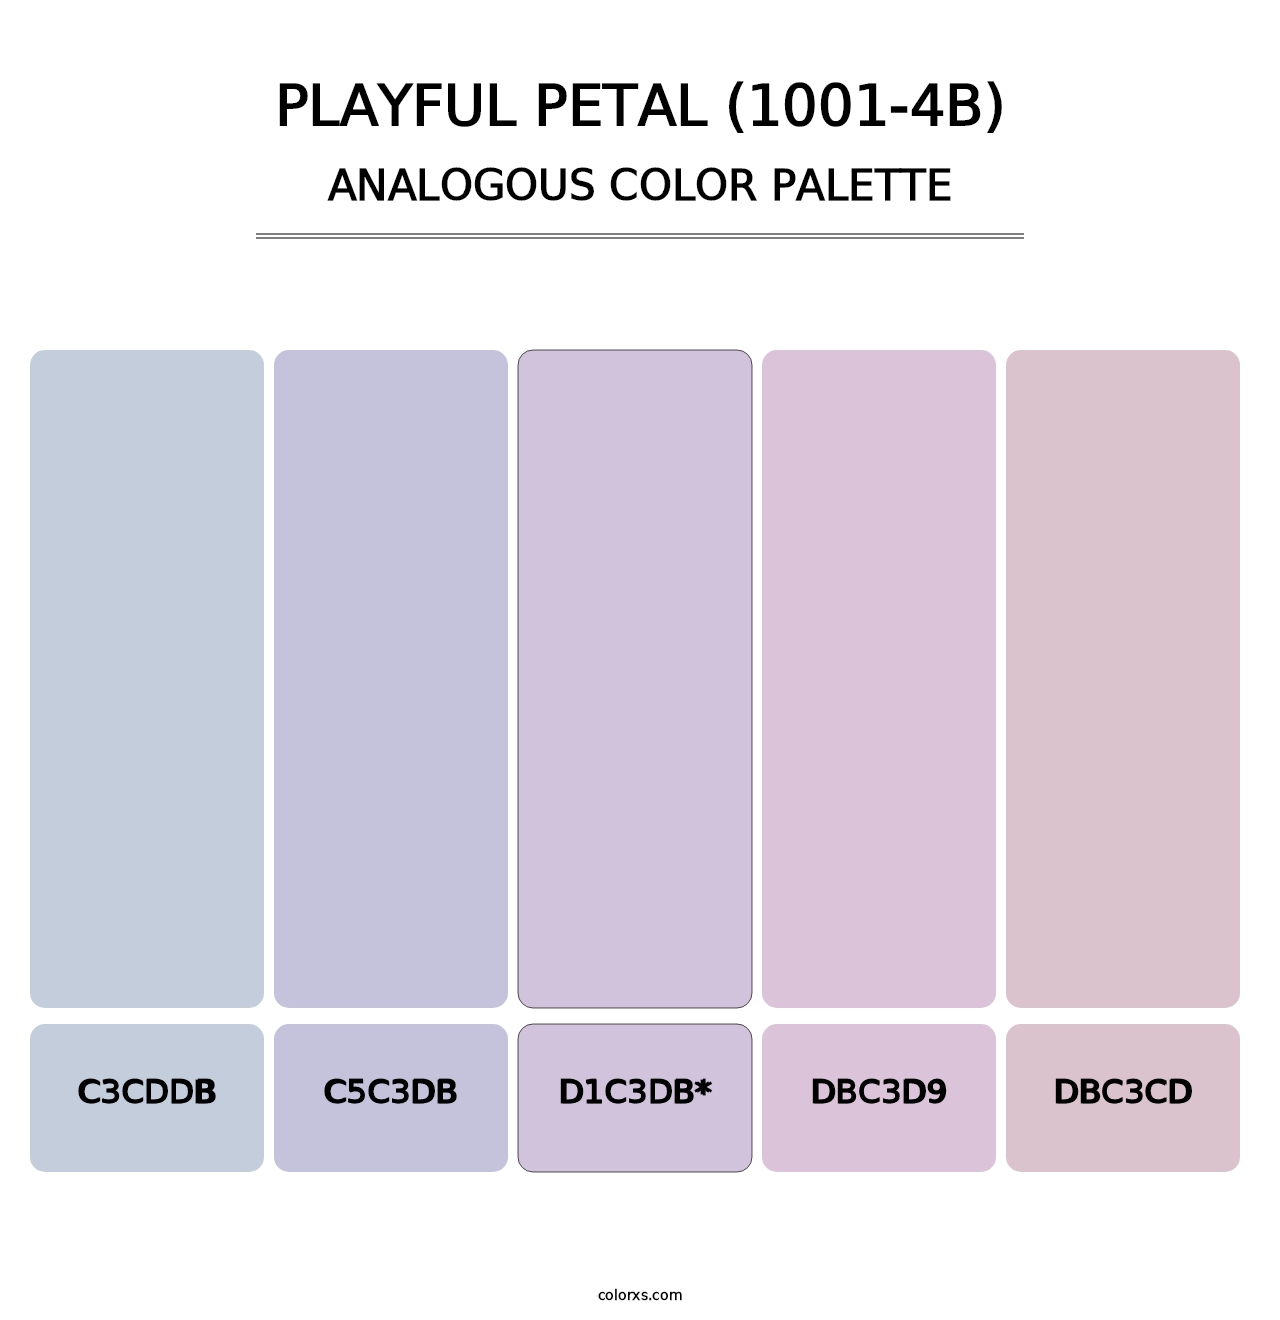 Playful Petal (1001-4B) - Analogous Color Palette